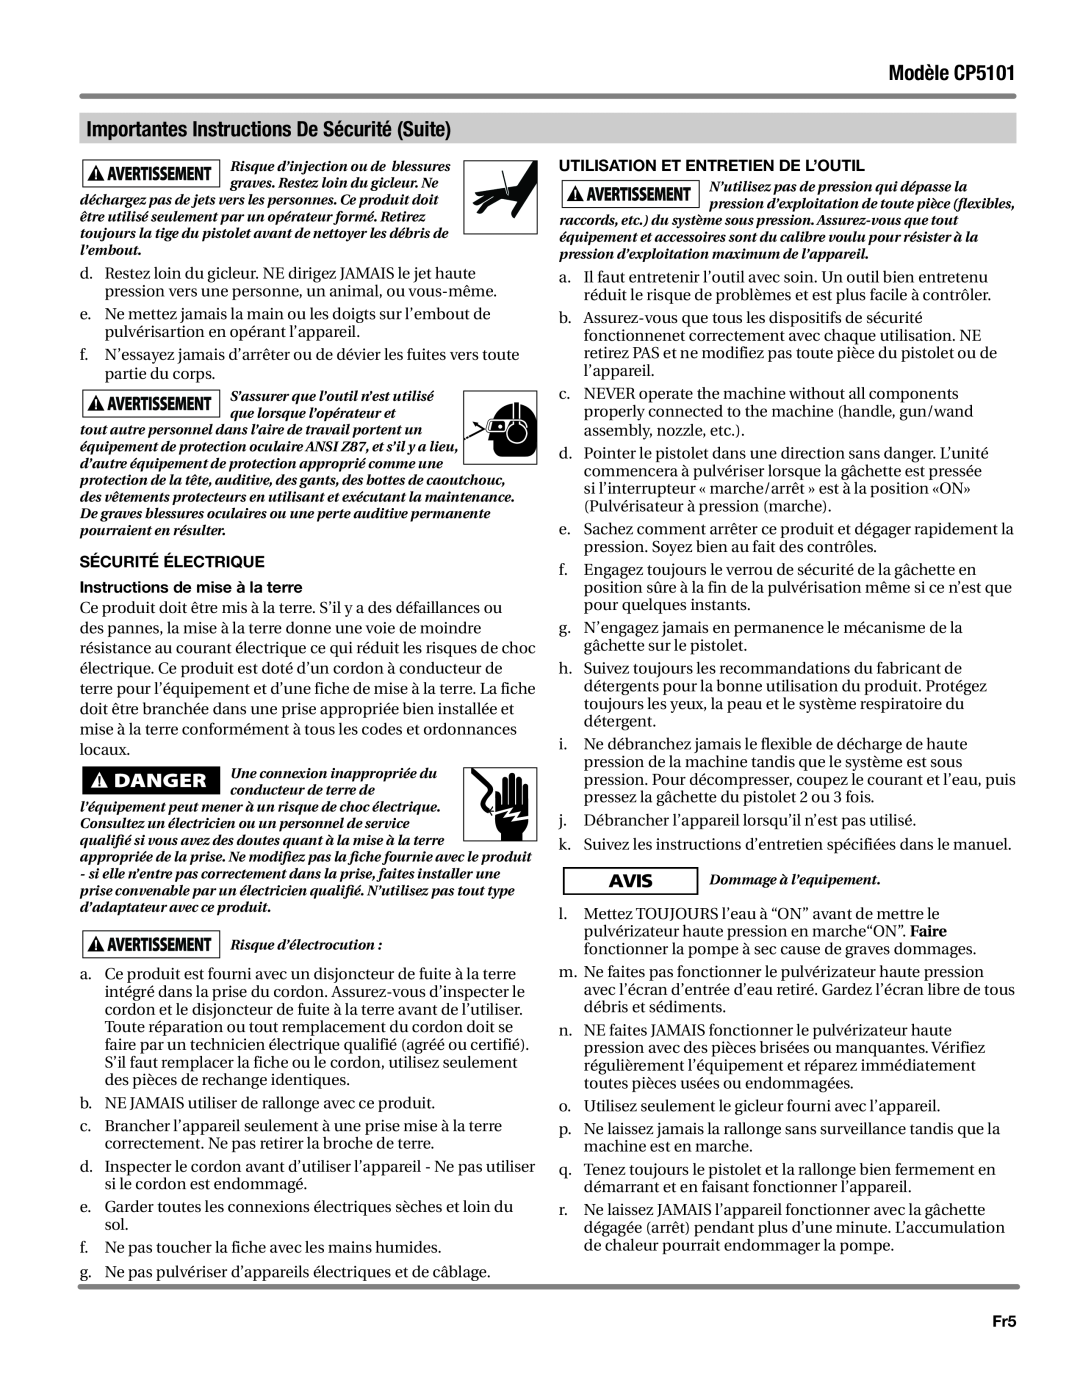 Campbell Hausfeld manual Modèle CP5101, Importantes Instructions De Sécurité Suite, Utilisation et entretien de l’outil 